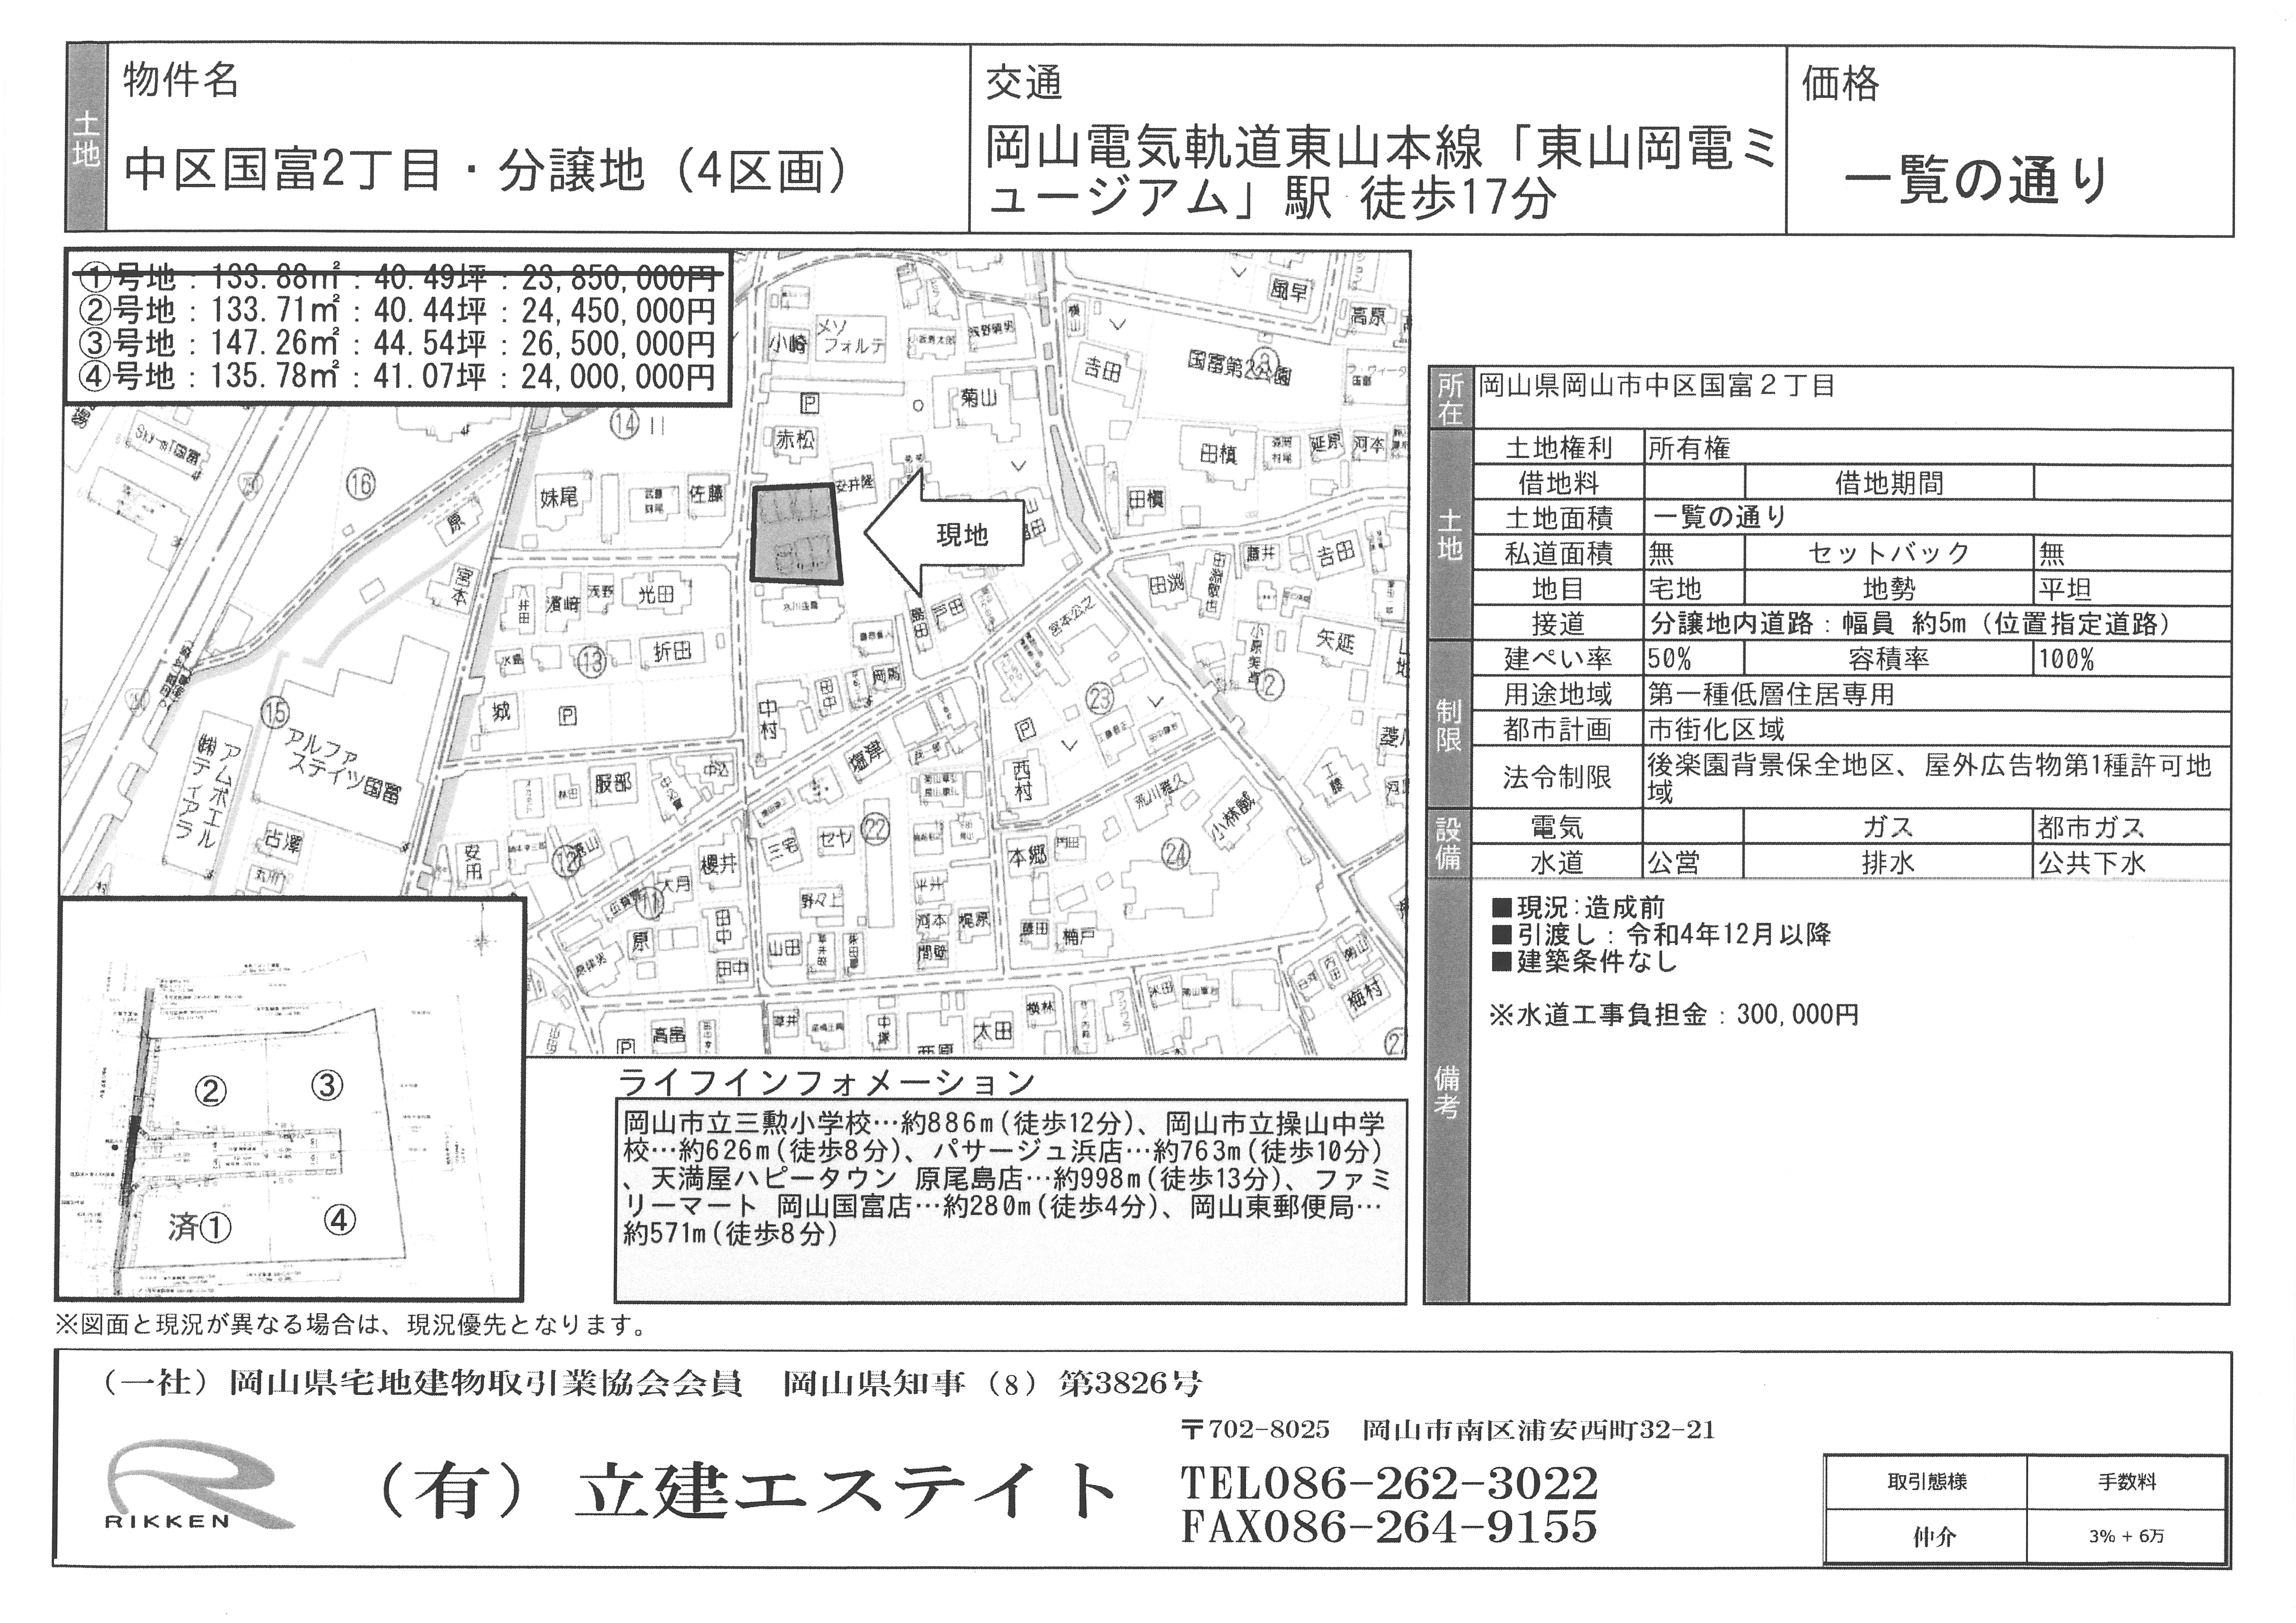 【中区国富】住宅用 売地(全4区画) 